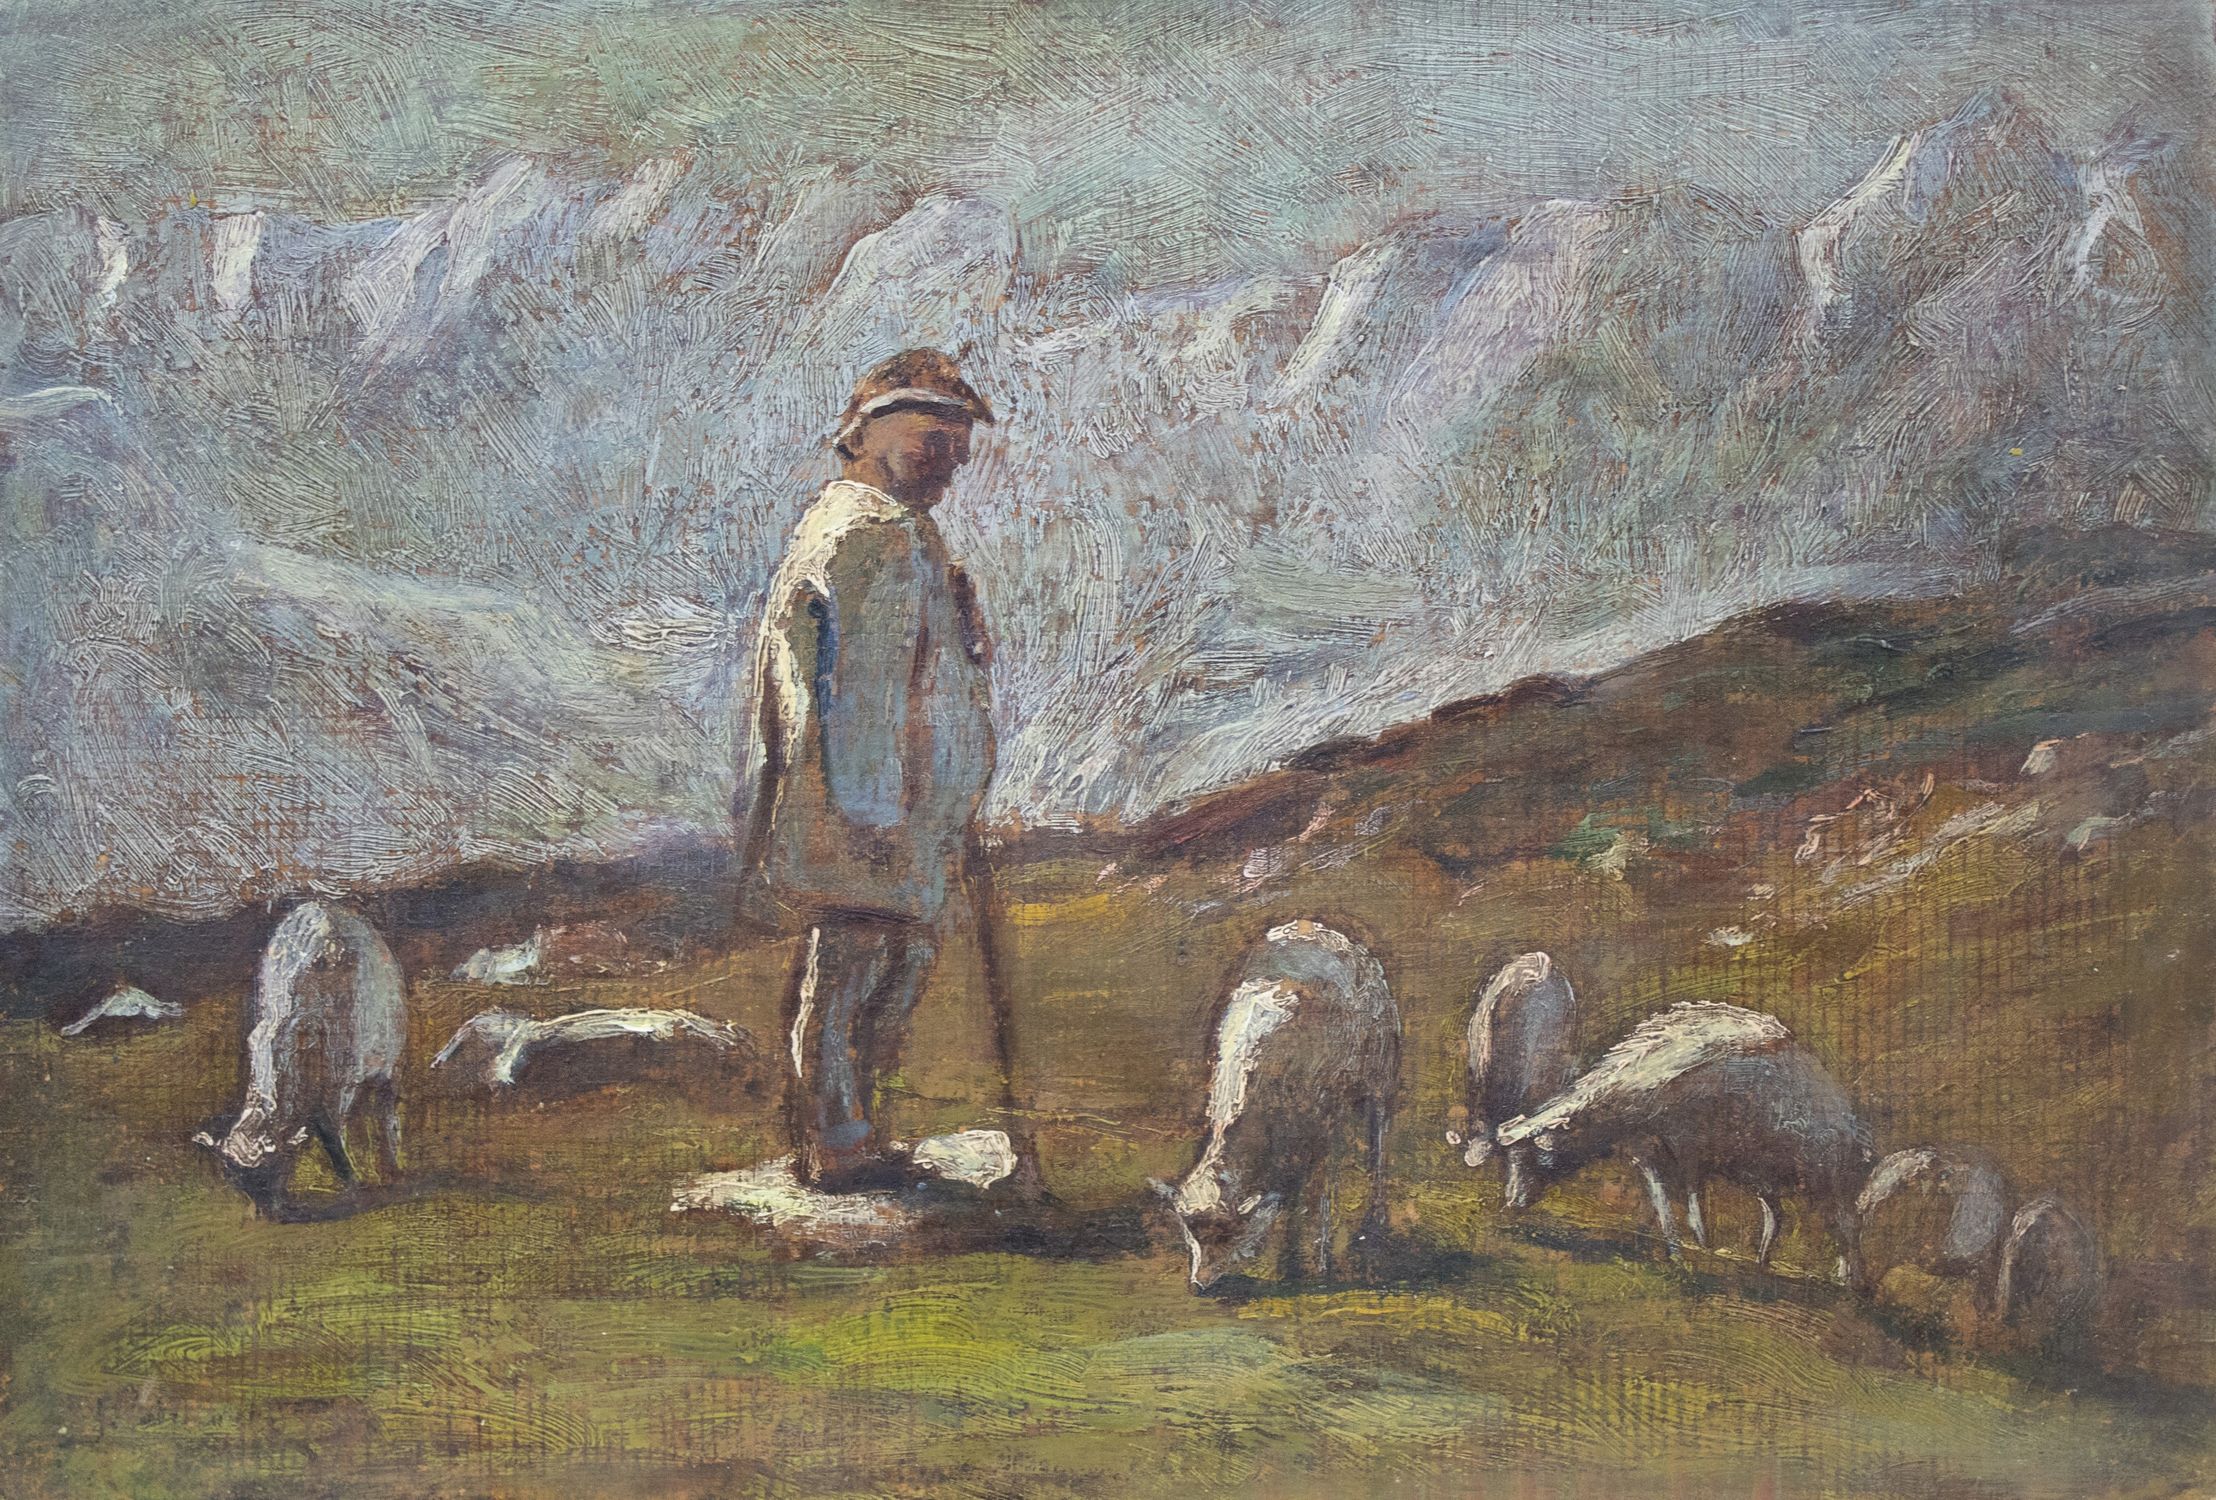 "A shepherd is grazing a flock"